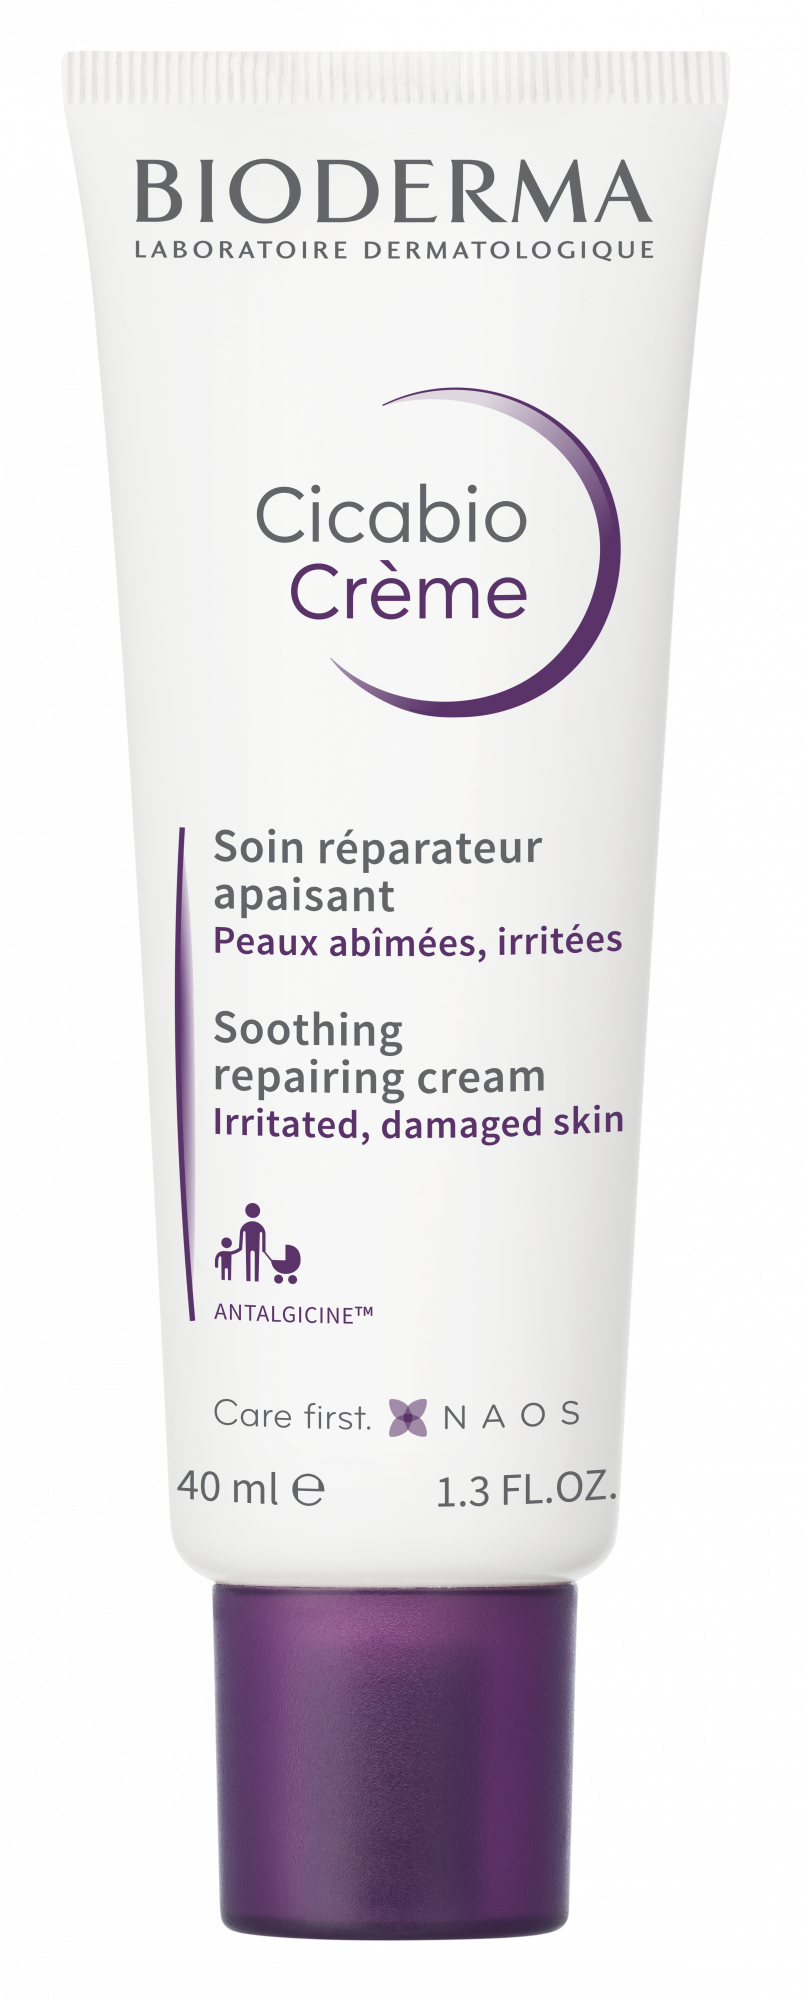 BIODERMA Cicabio Crème repairing cream | For irritated & damaged skin, face